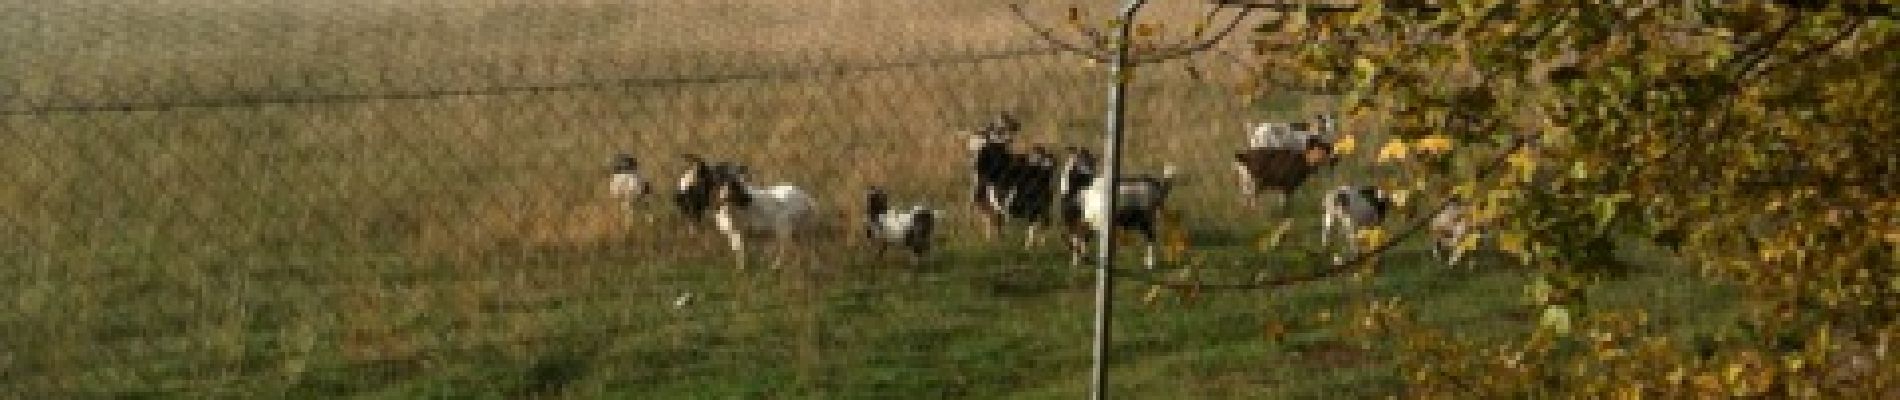 Point d'intérêt Limogne-en-Quercy - Chèvres au pâturage - Photo